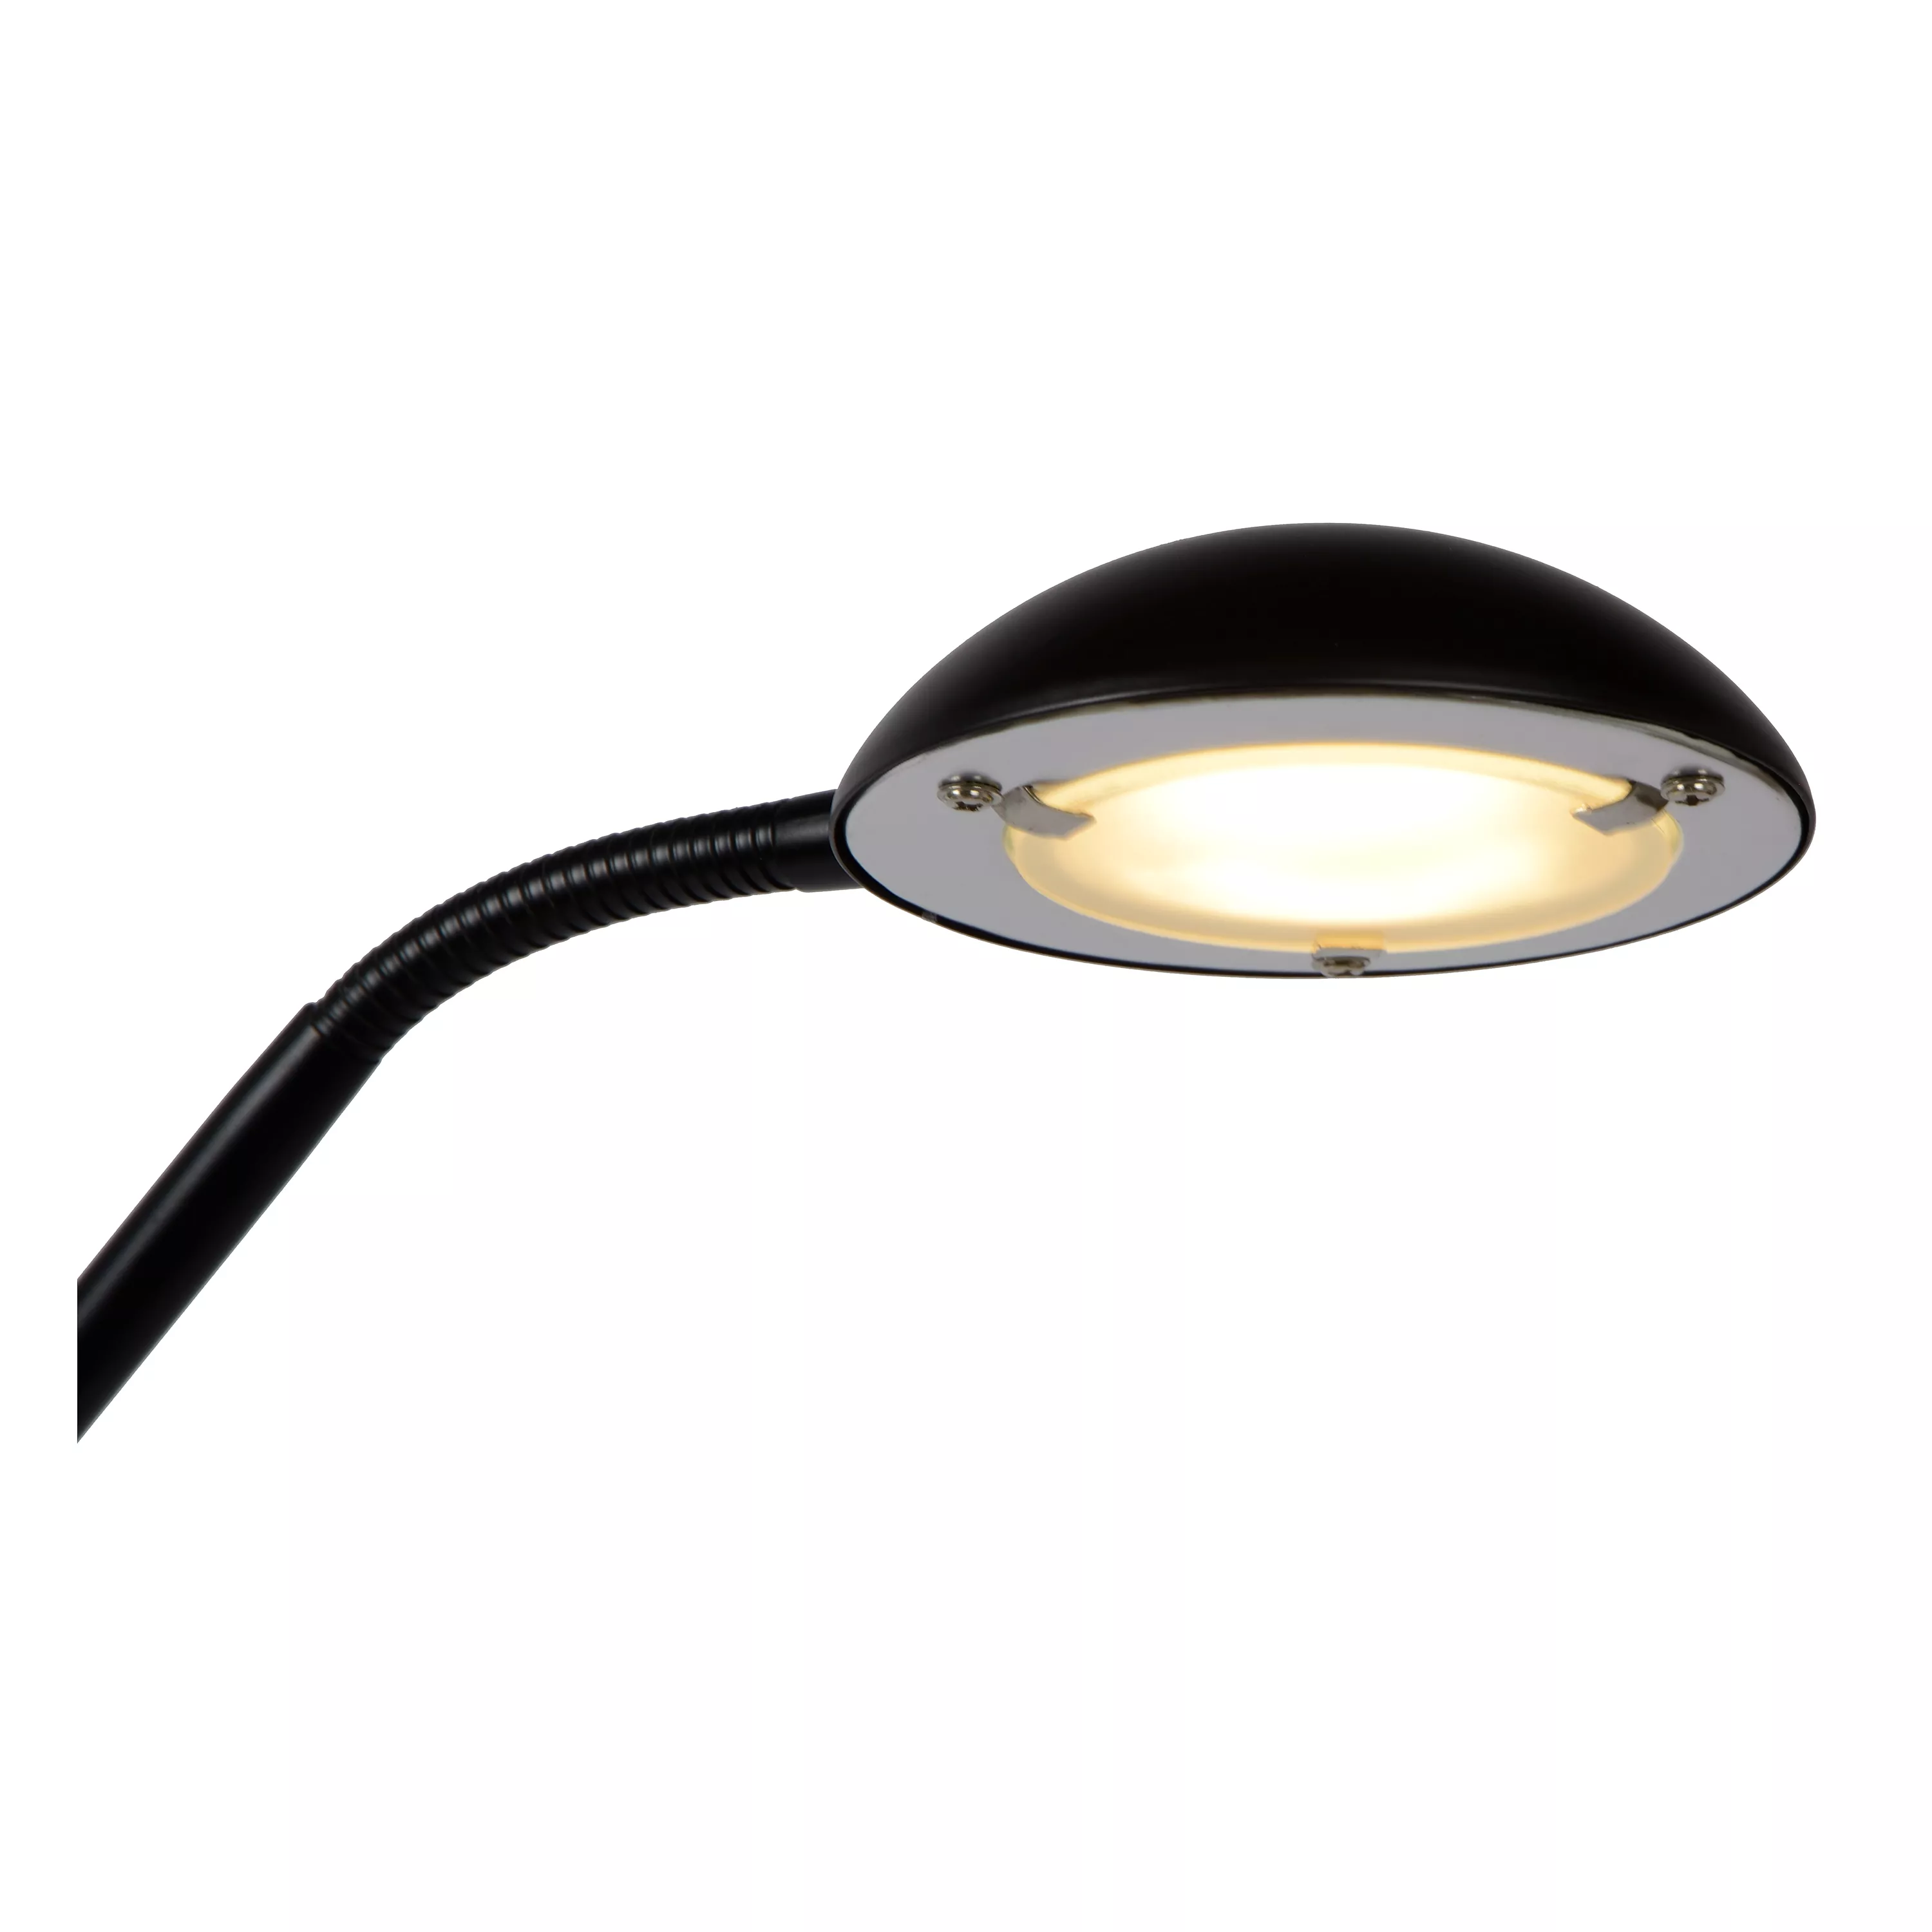 Stojací lampa Zenith od Lucide kombinuje dvě stínítka s integrovaným LED zdrojem a nastavitelným ramenem. Ideální do obývacího pokoje nebo ložnice.